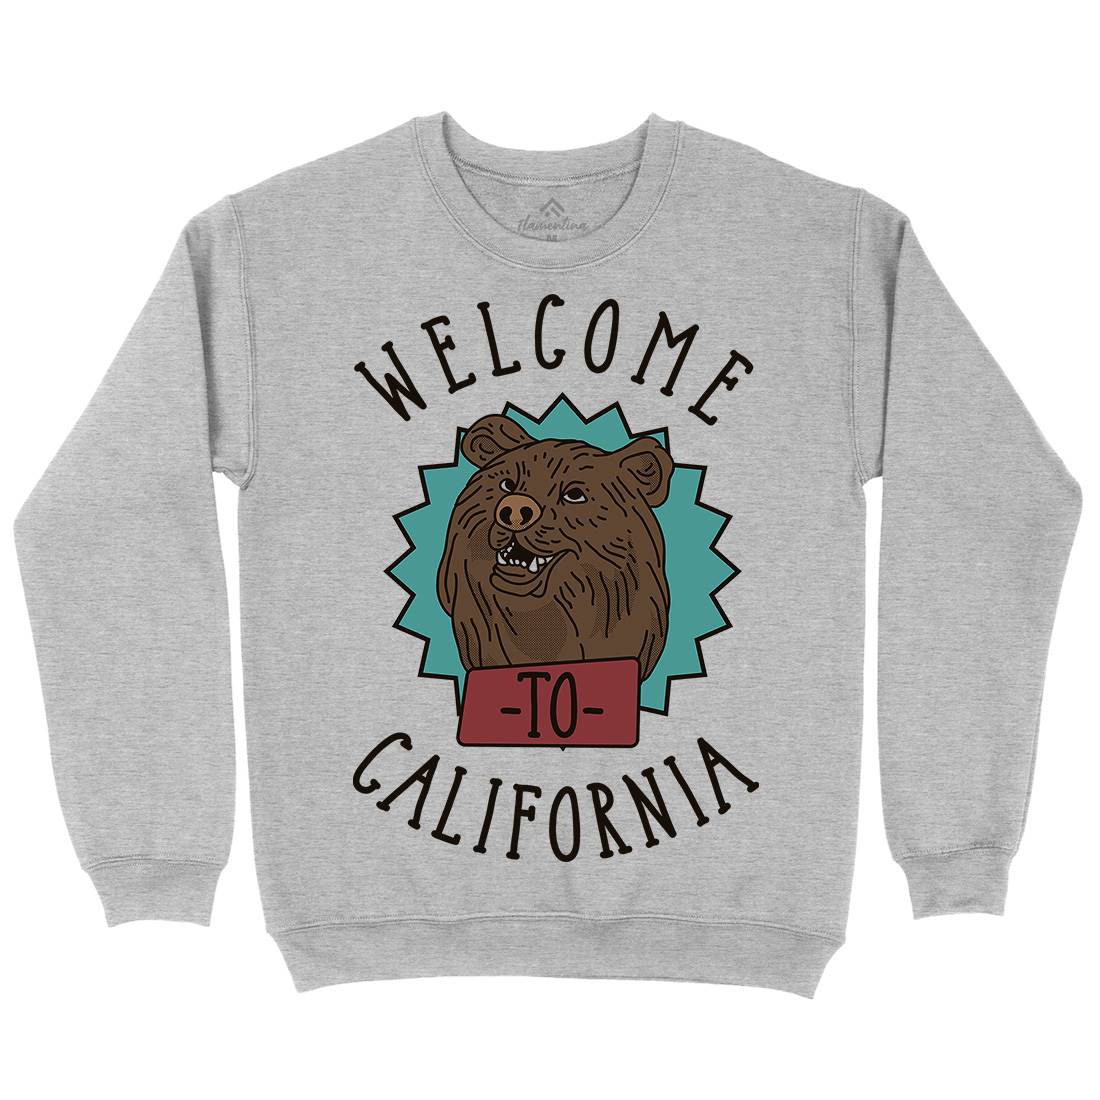 Welcome To California Kids Crew Neck Sweatshirt Animals D997